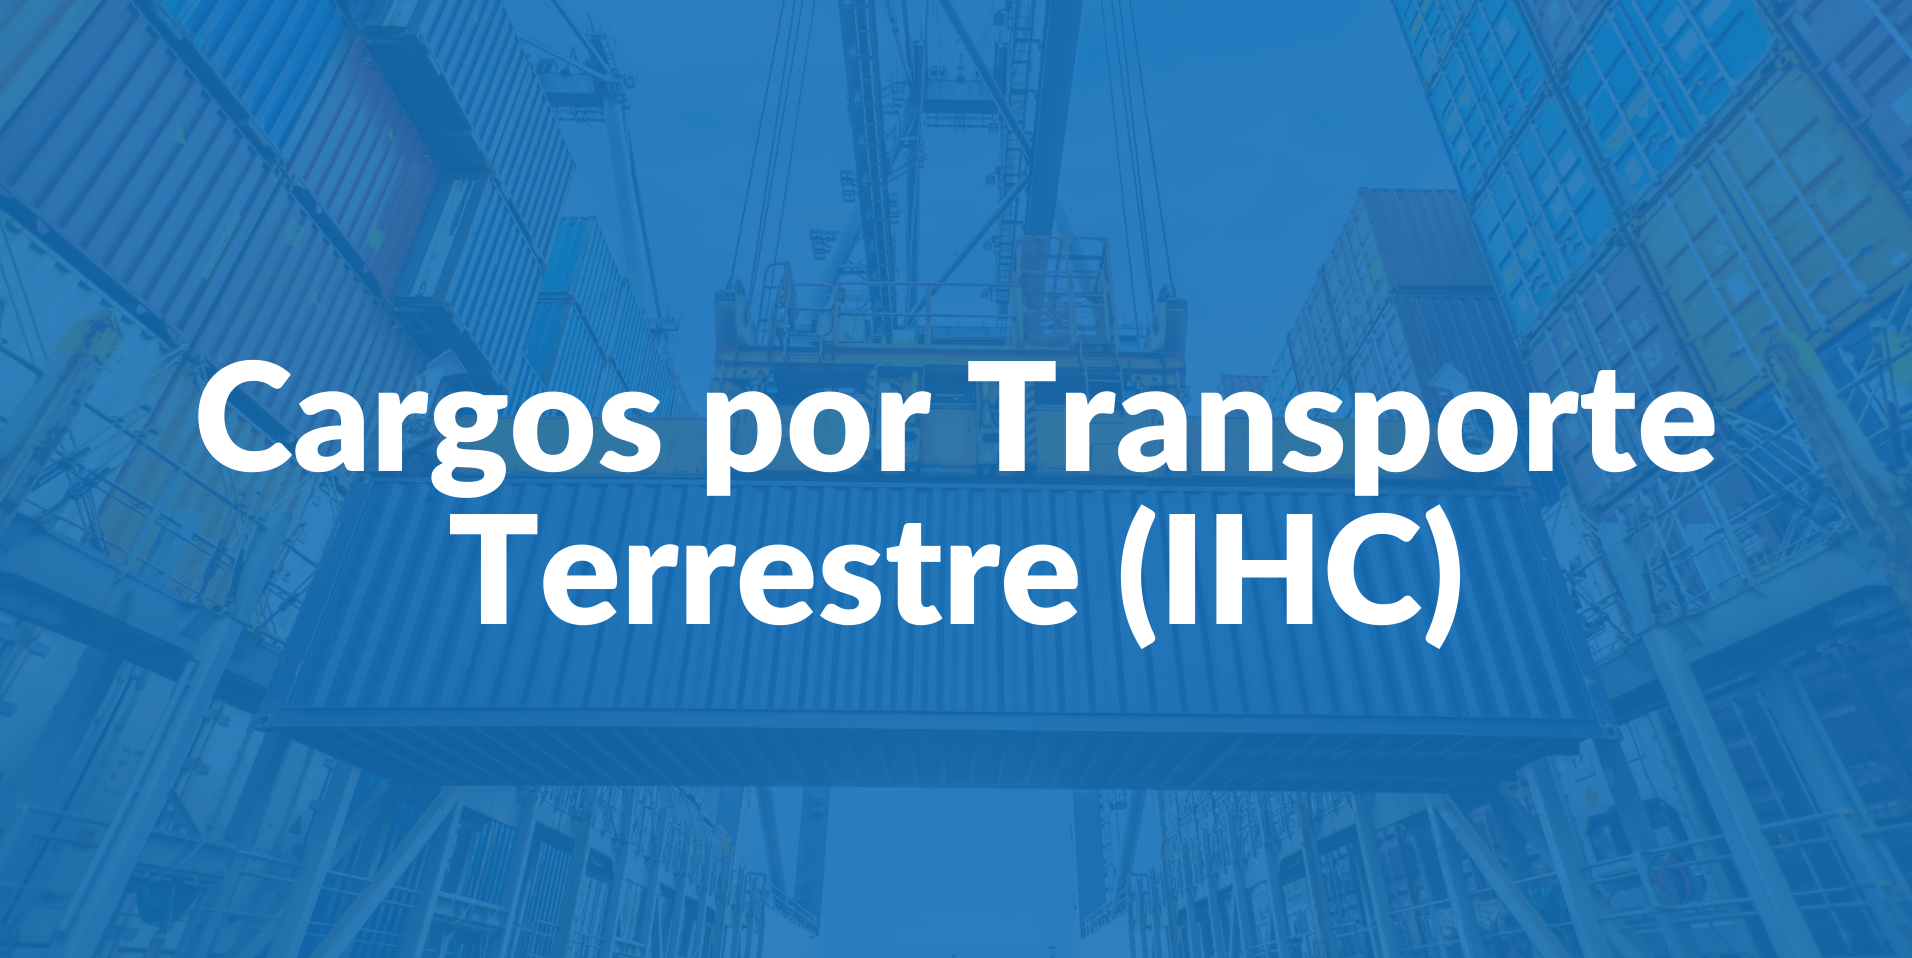 ¿Qué son los cargos por transporte terrestre (IHC)?